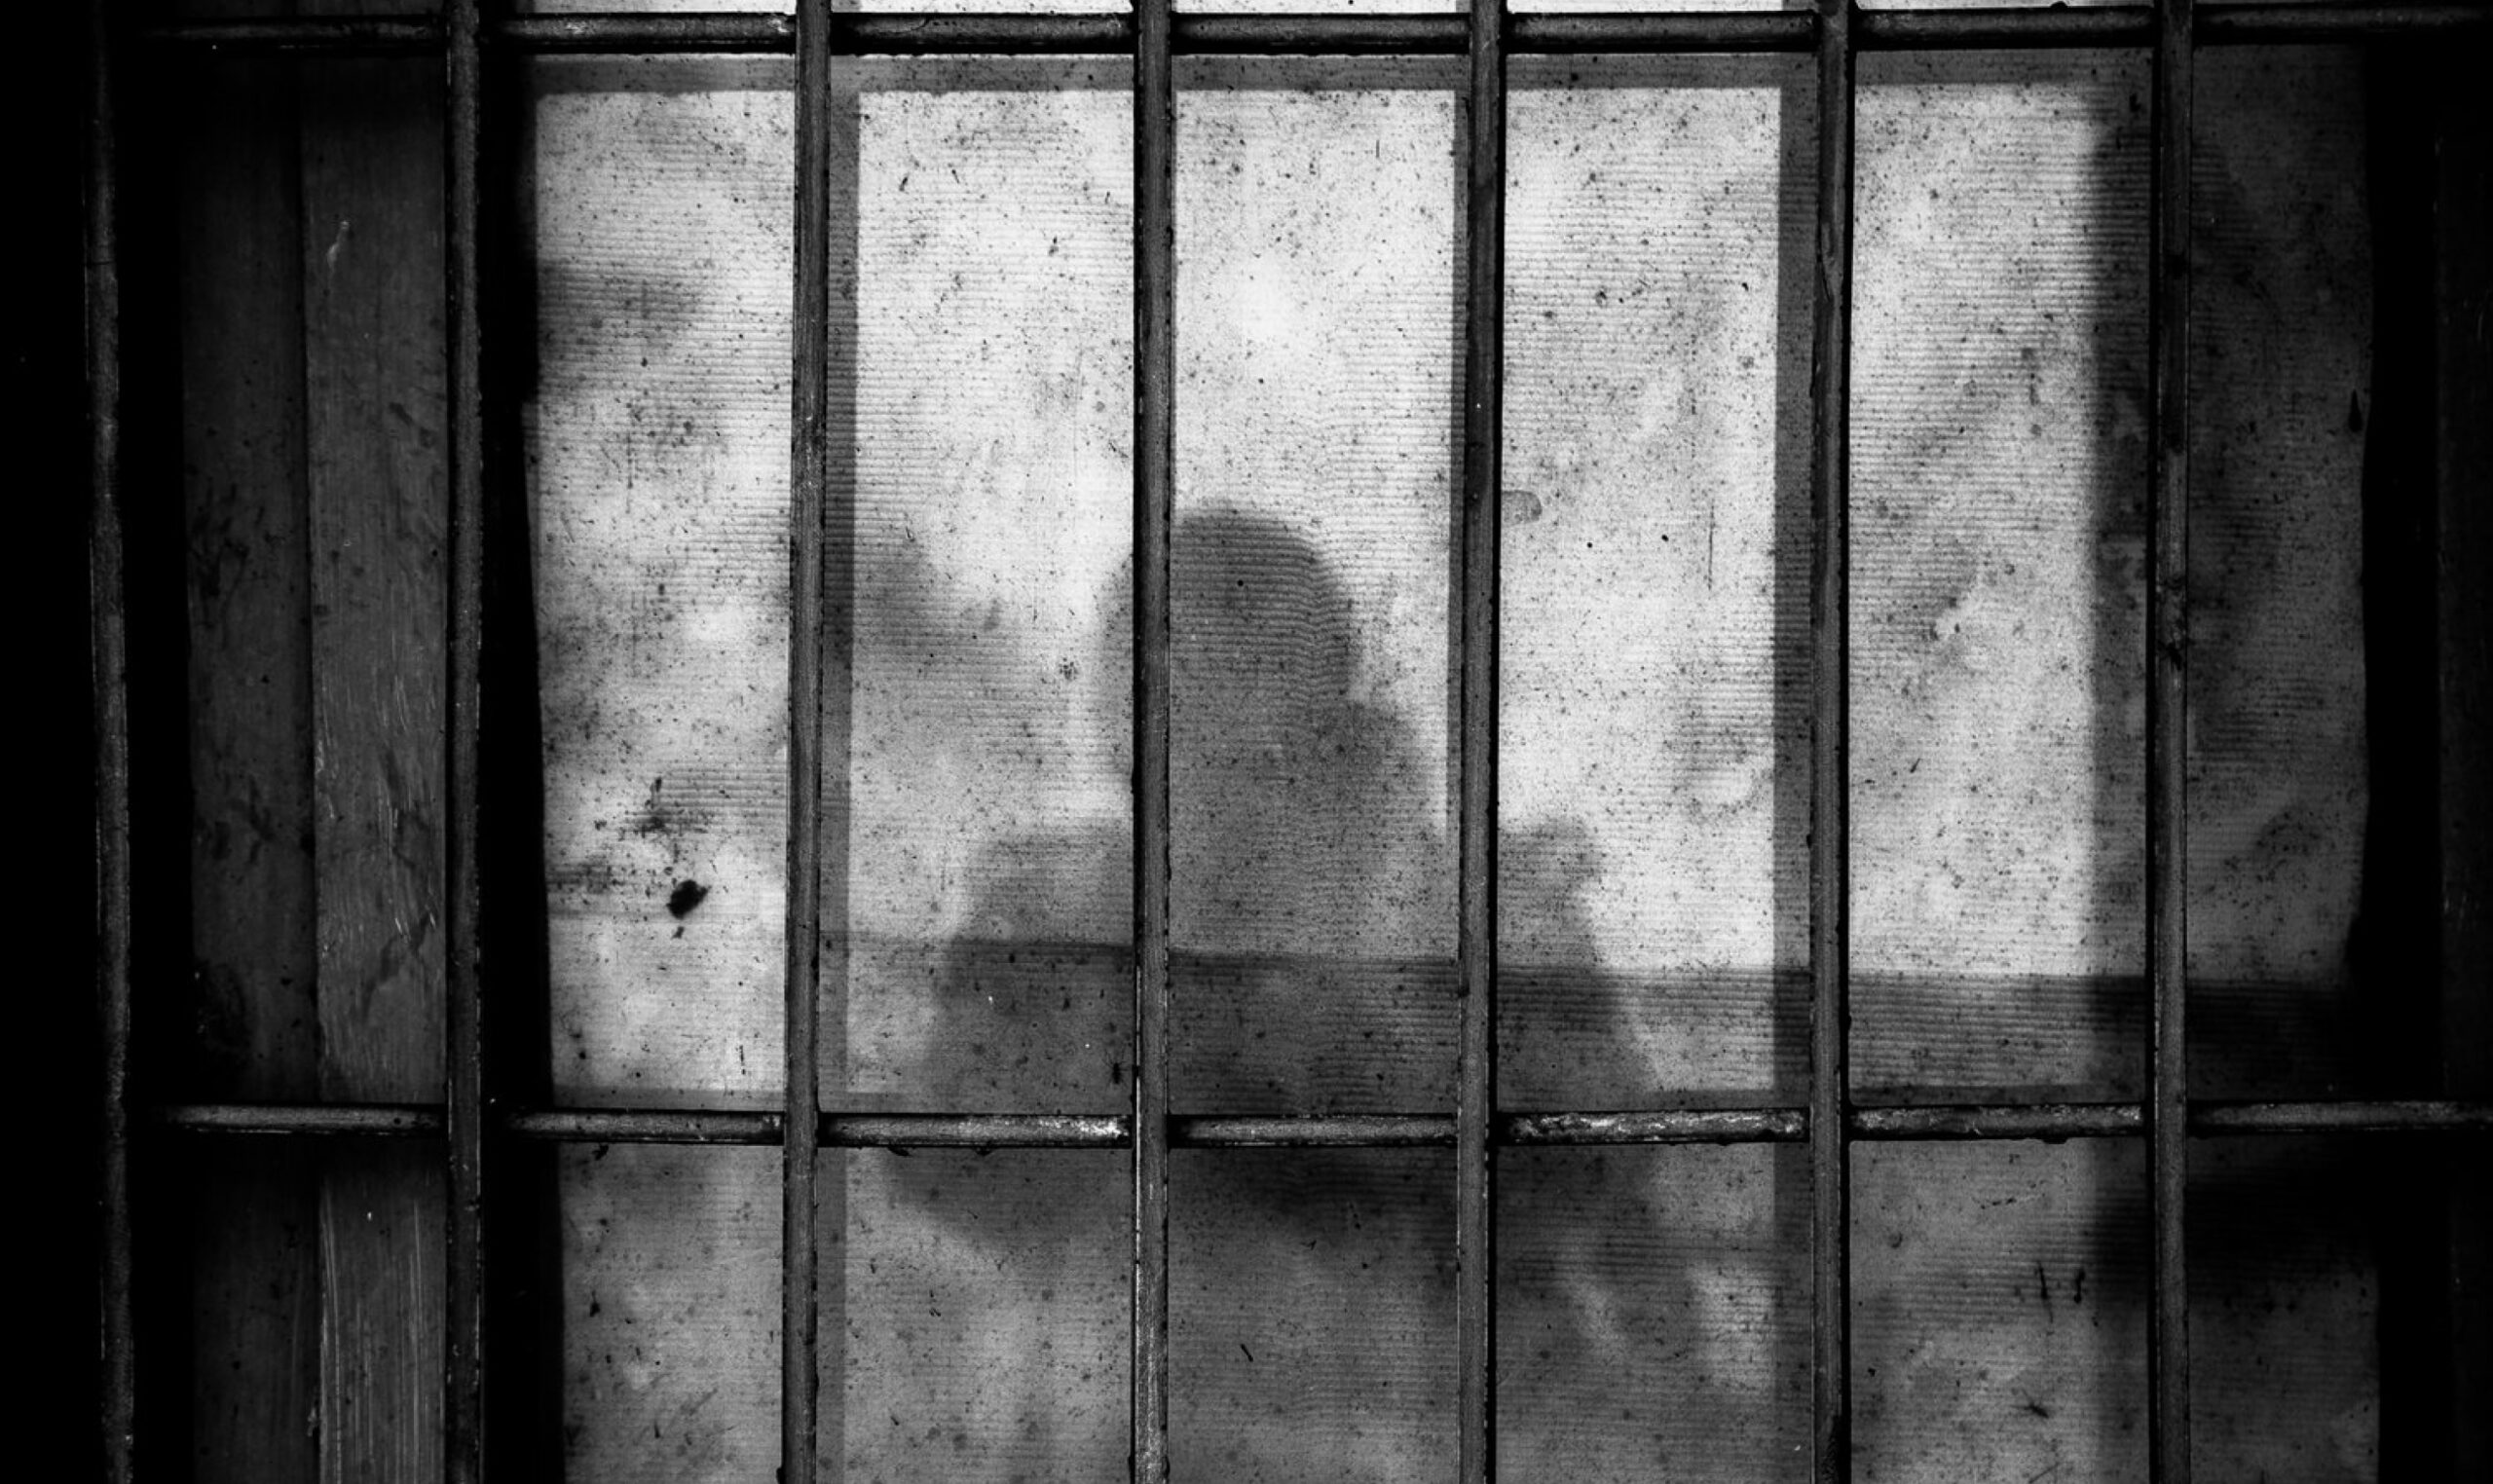 Person behind jail bars